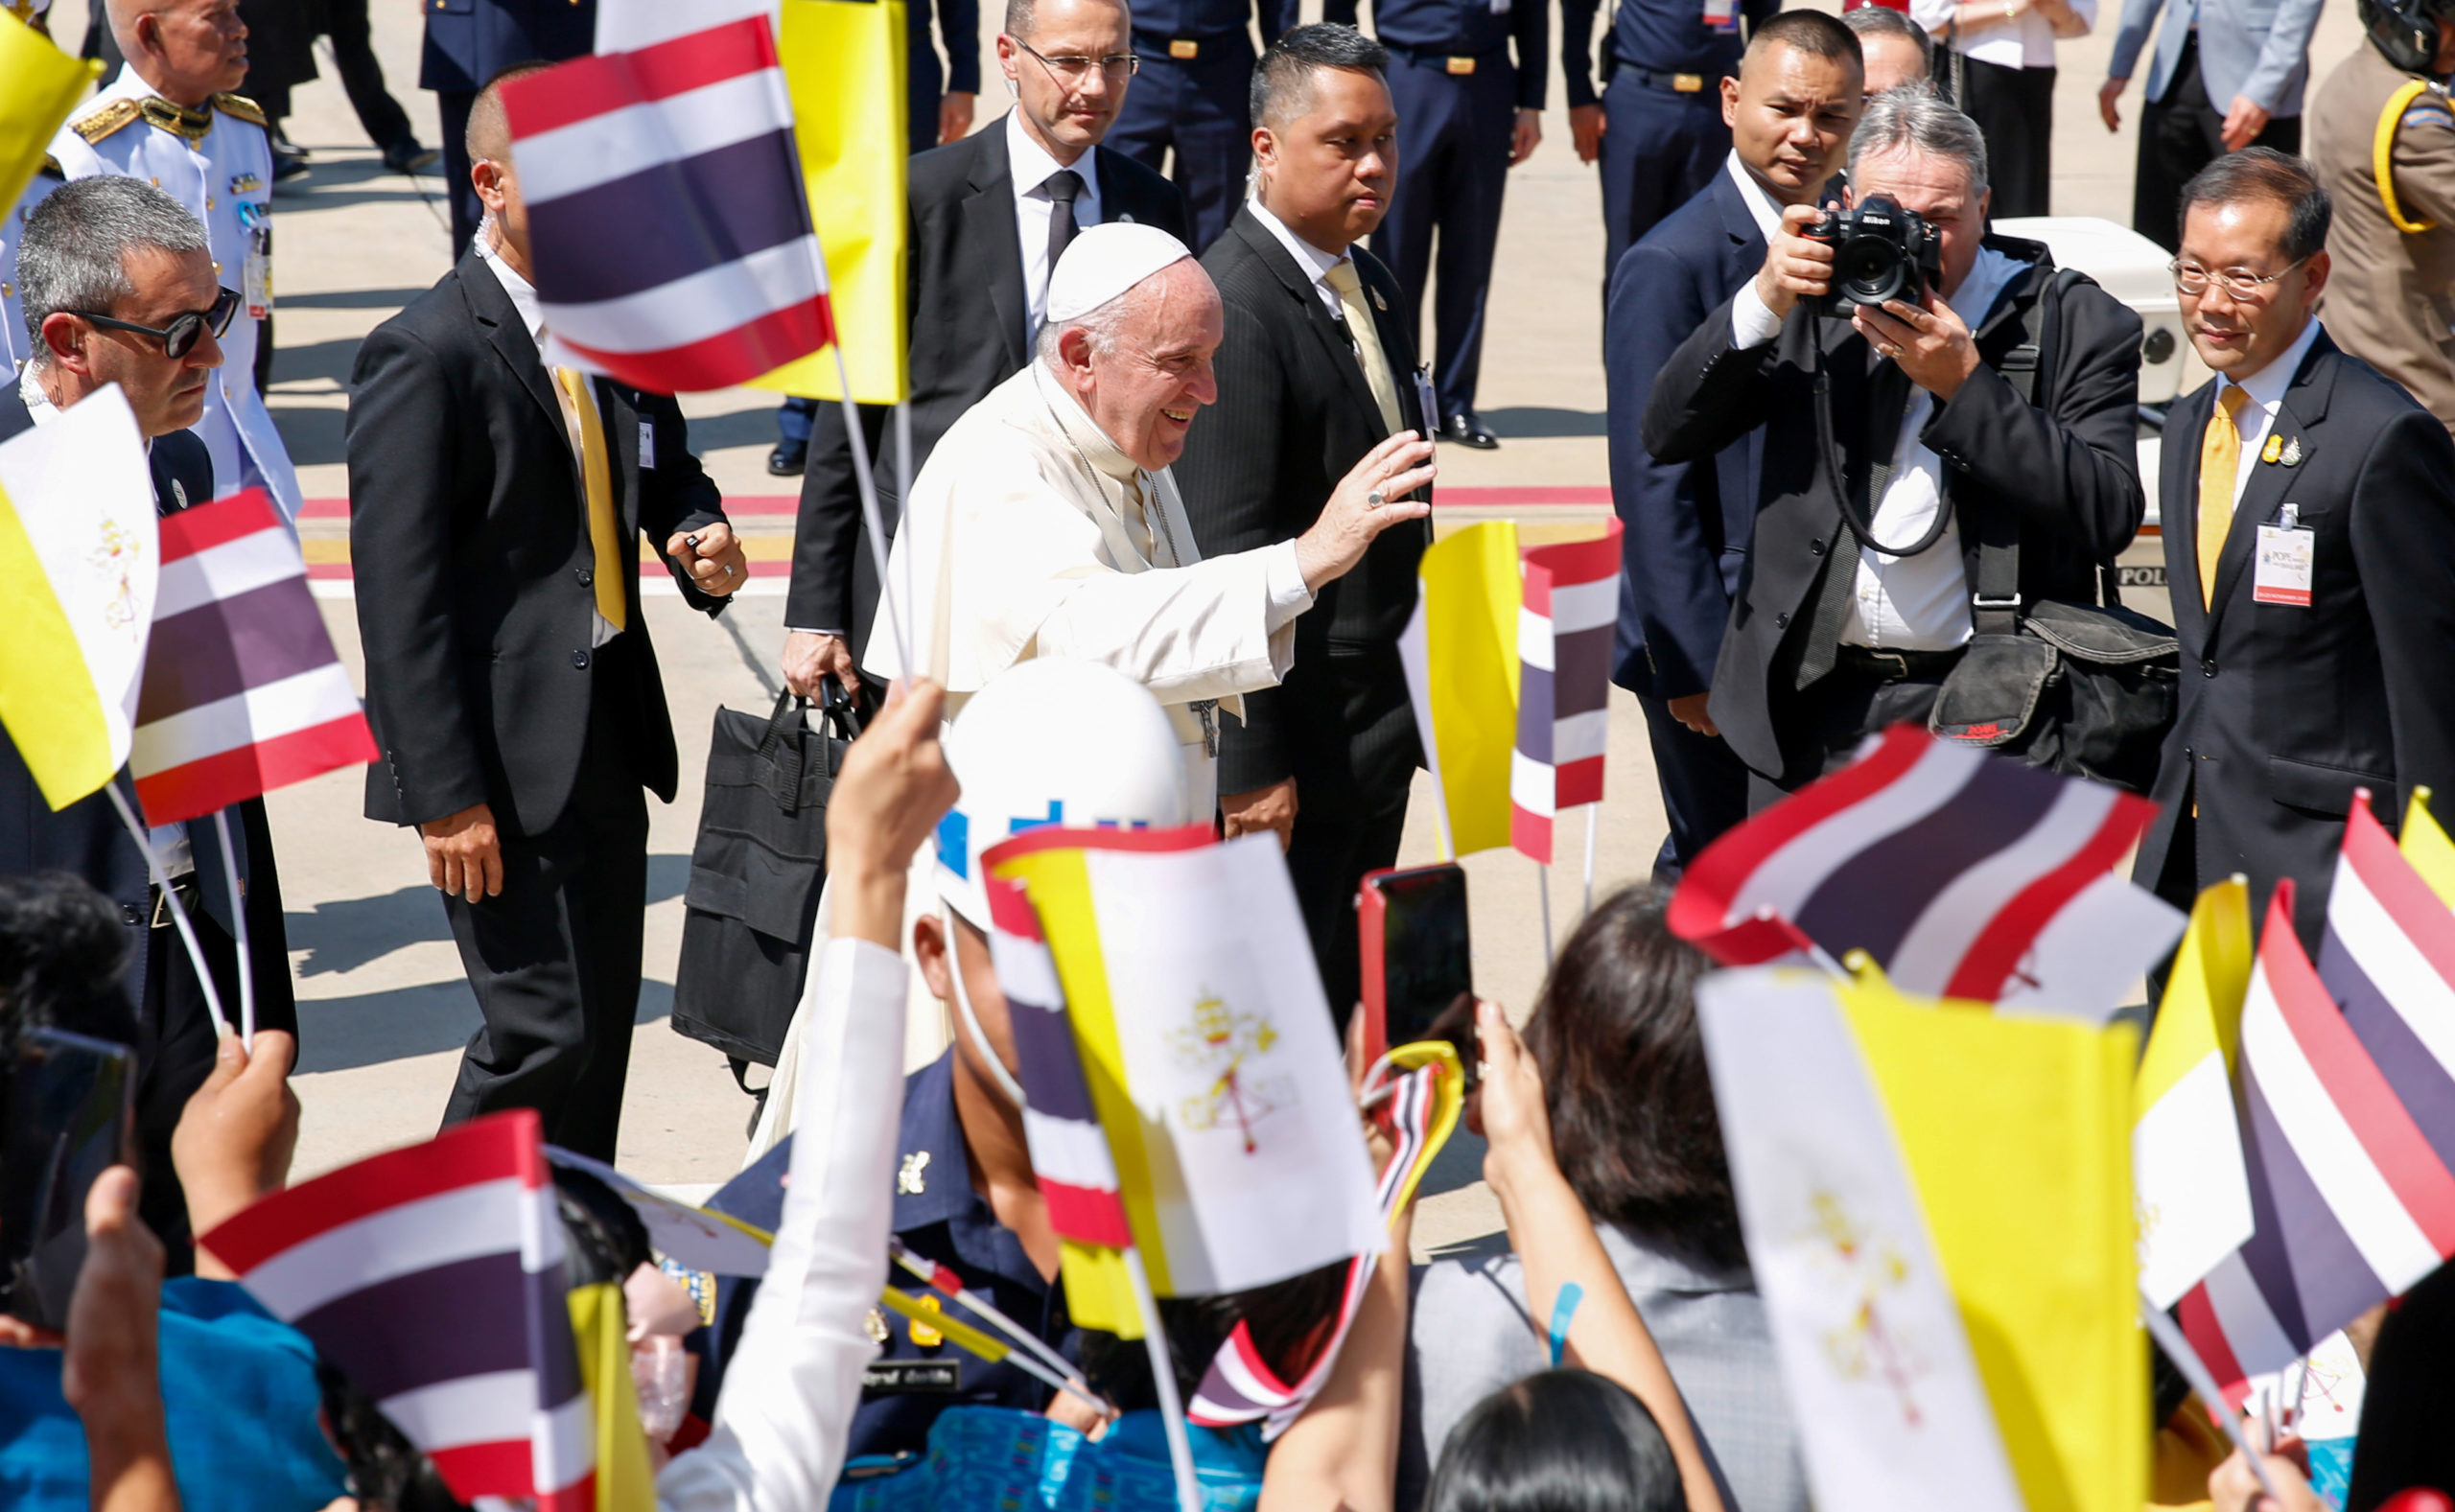 Le pape François est arrivé mercredi en Thaïlande, première étape d'un voyage de sept jours en Asie durant lequel il se rendra également au Japon, une première en près de 40 ans. /Photo prise le 20 novembre 2019/REUTERS/Remo Casilli